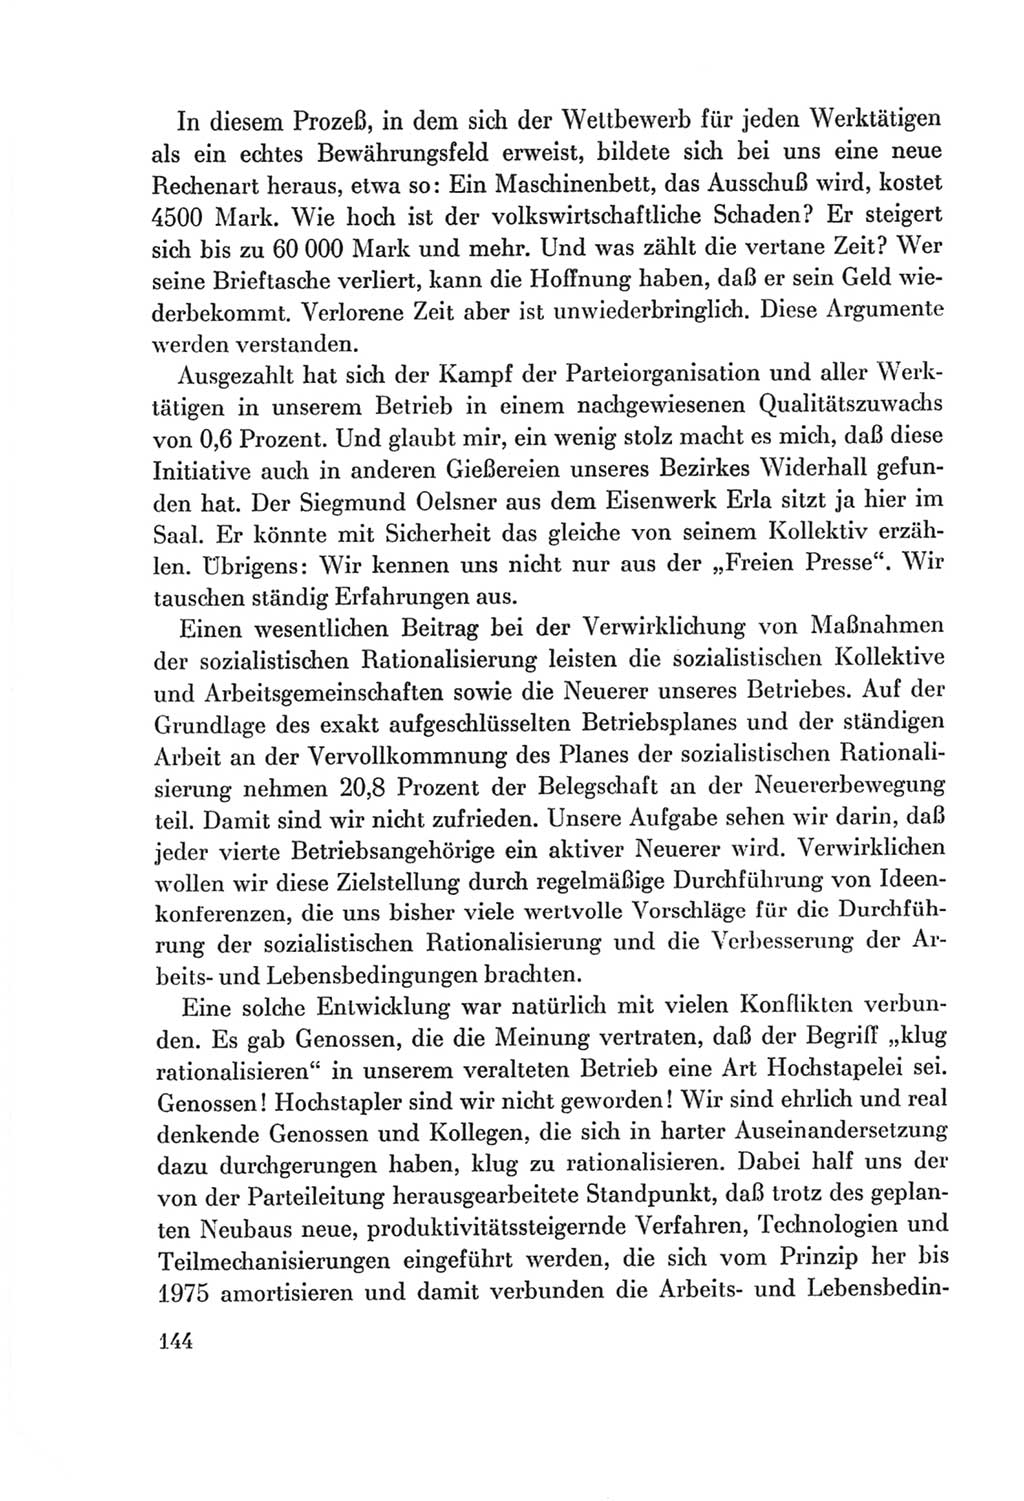 Protokoll der Verhandlungen des Ⅷ. Parteitages der Sozialistischen Einheitspartei Deutschlands (SED) [Deutsche Demokratische Republik (DDR)] 1971, Band 1, Seite 144 (Prot. Verh. Ⅷ. PT SED DDR 1971, Bd. 1, S. 144)